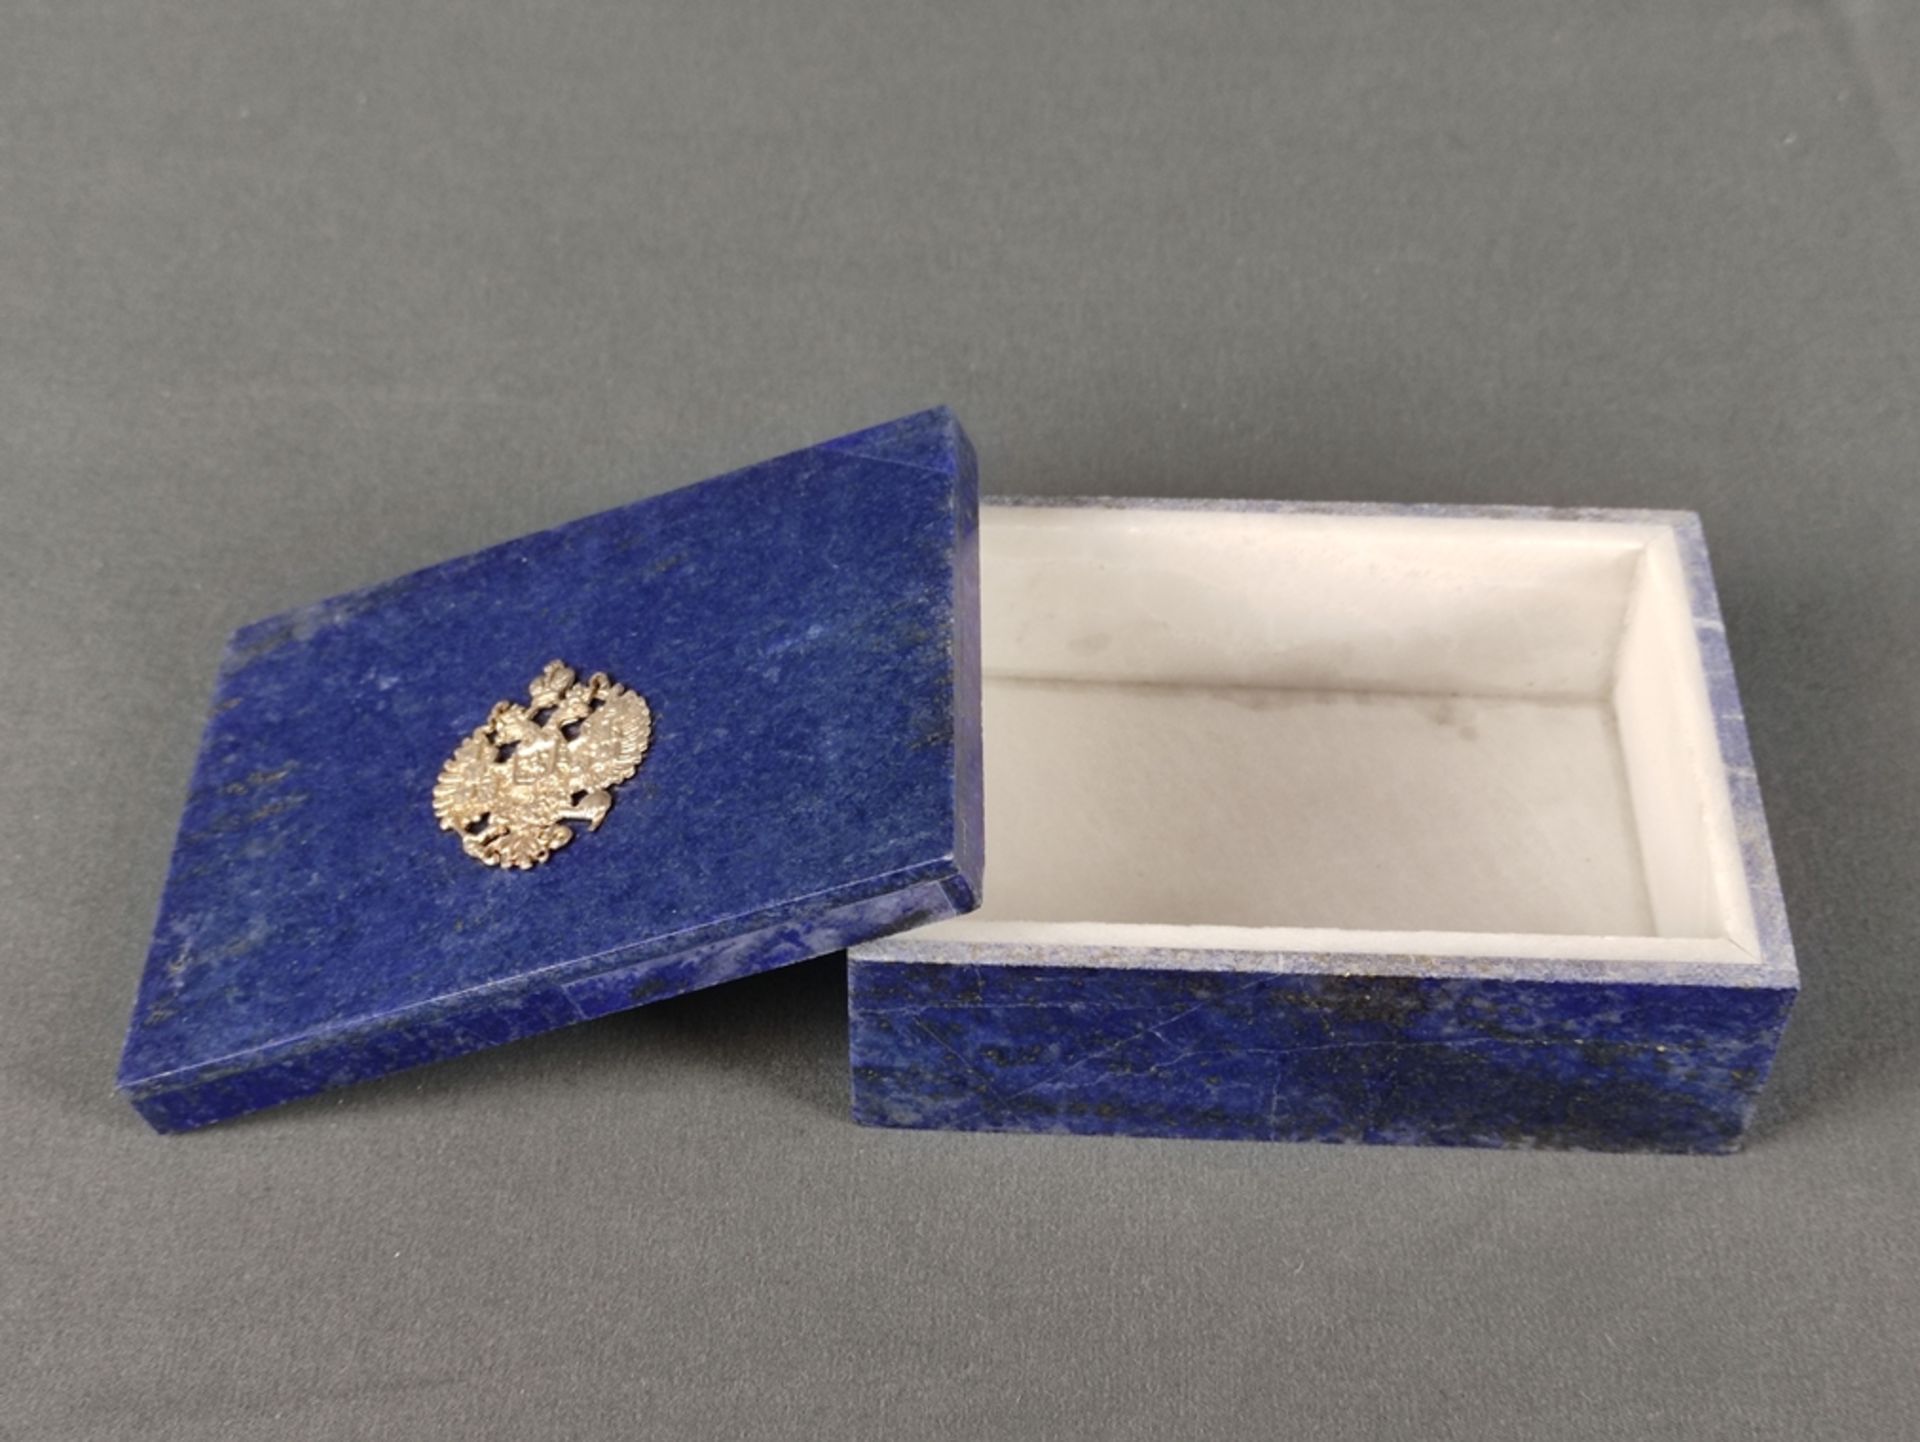 Lapis lazuli box, rectangular lidded box made of delicately polished natural royal blue lapis lazul - Image 2 of 2